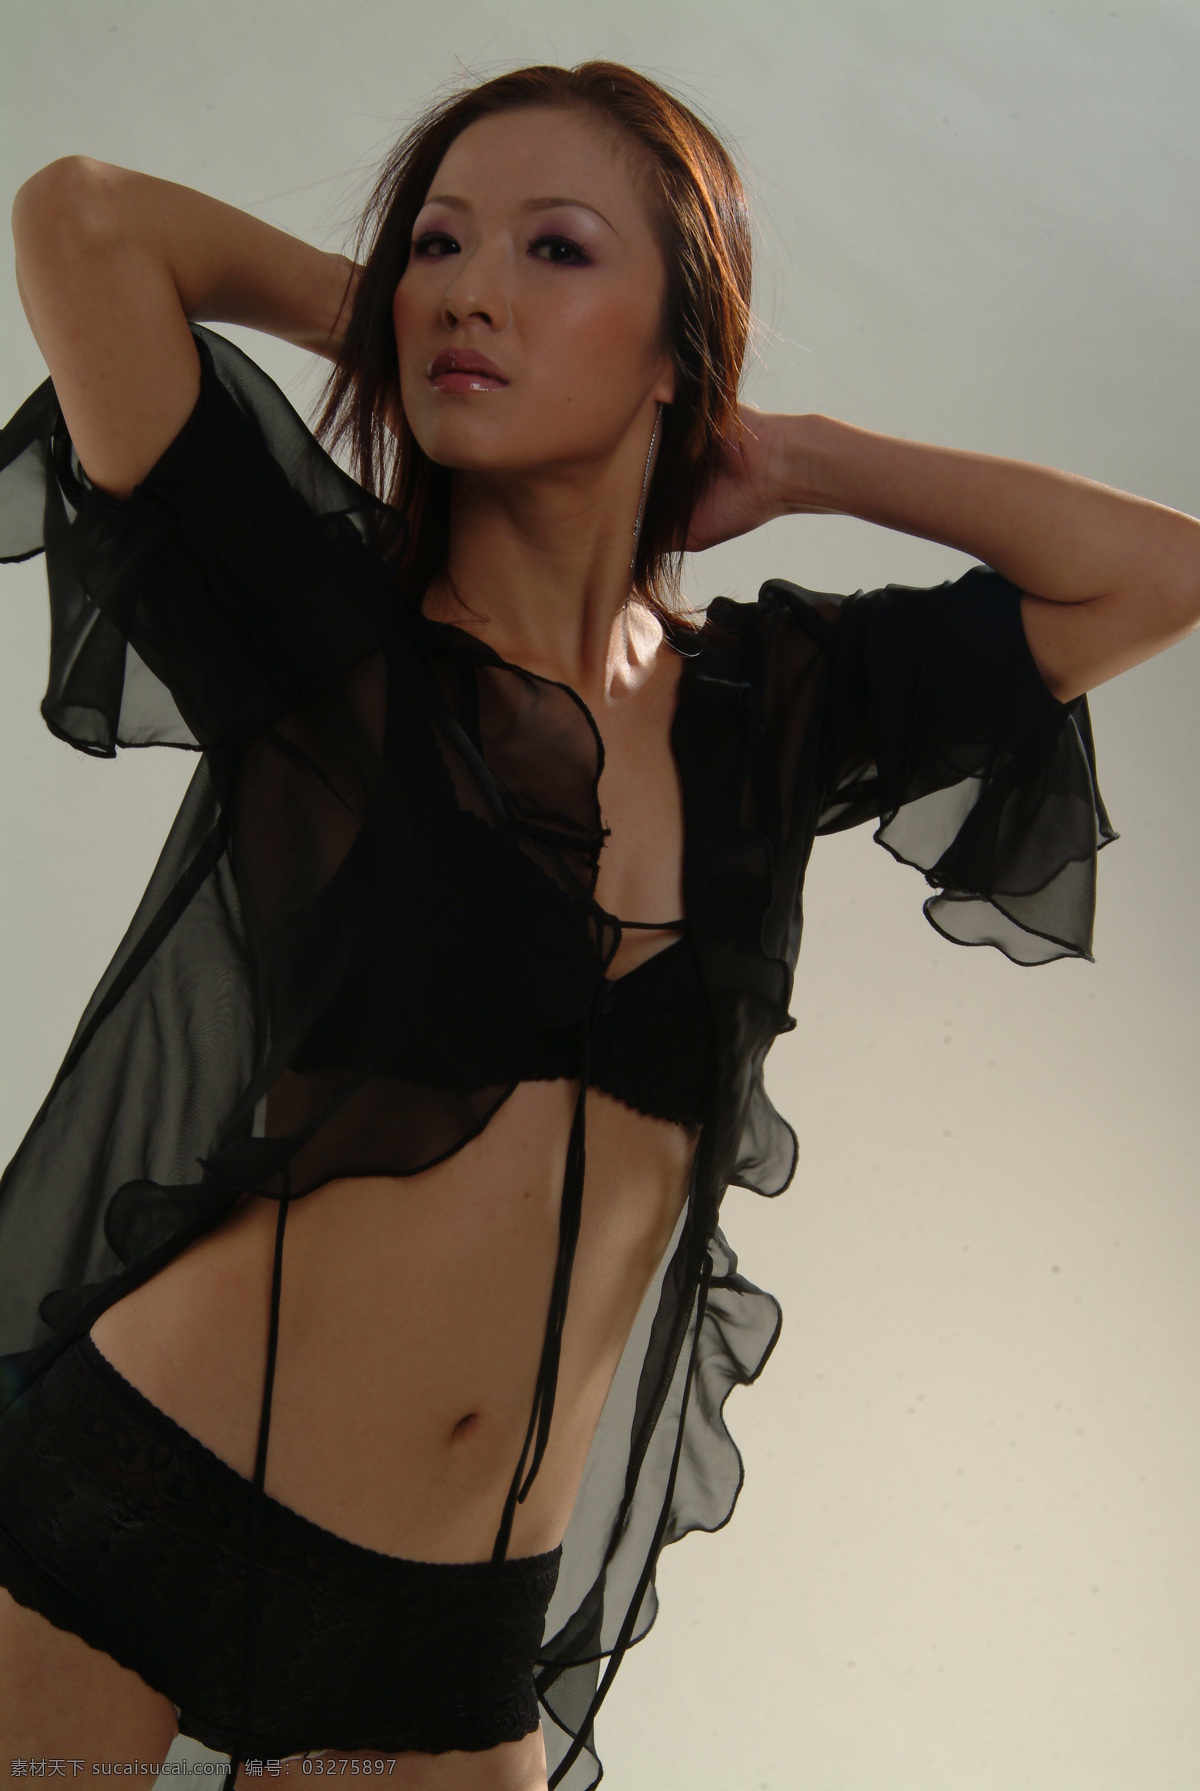 女人 写真 性感 室内 调色 美女 造型 黑裙 个性 模特 平面模特 曲线 内衣 女性女人 人物图库